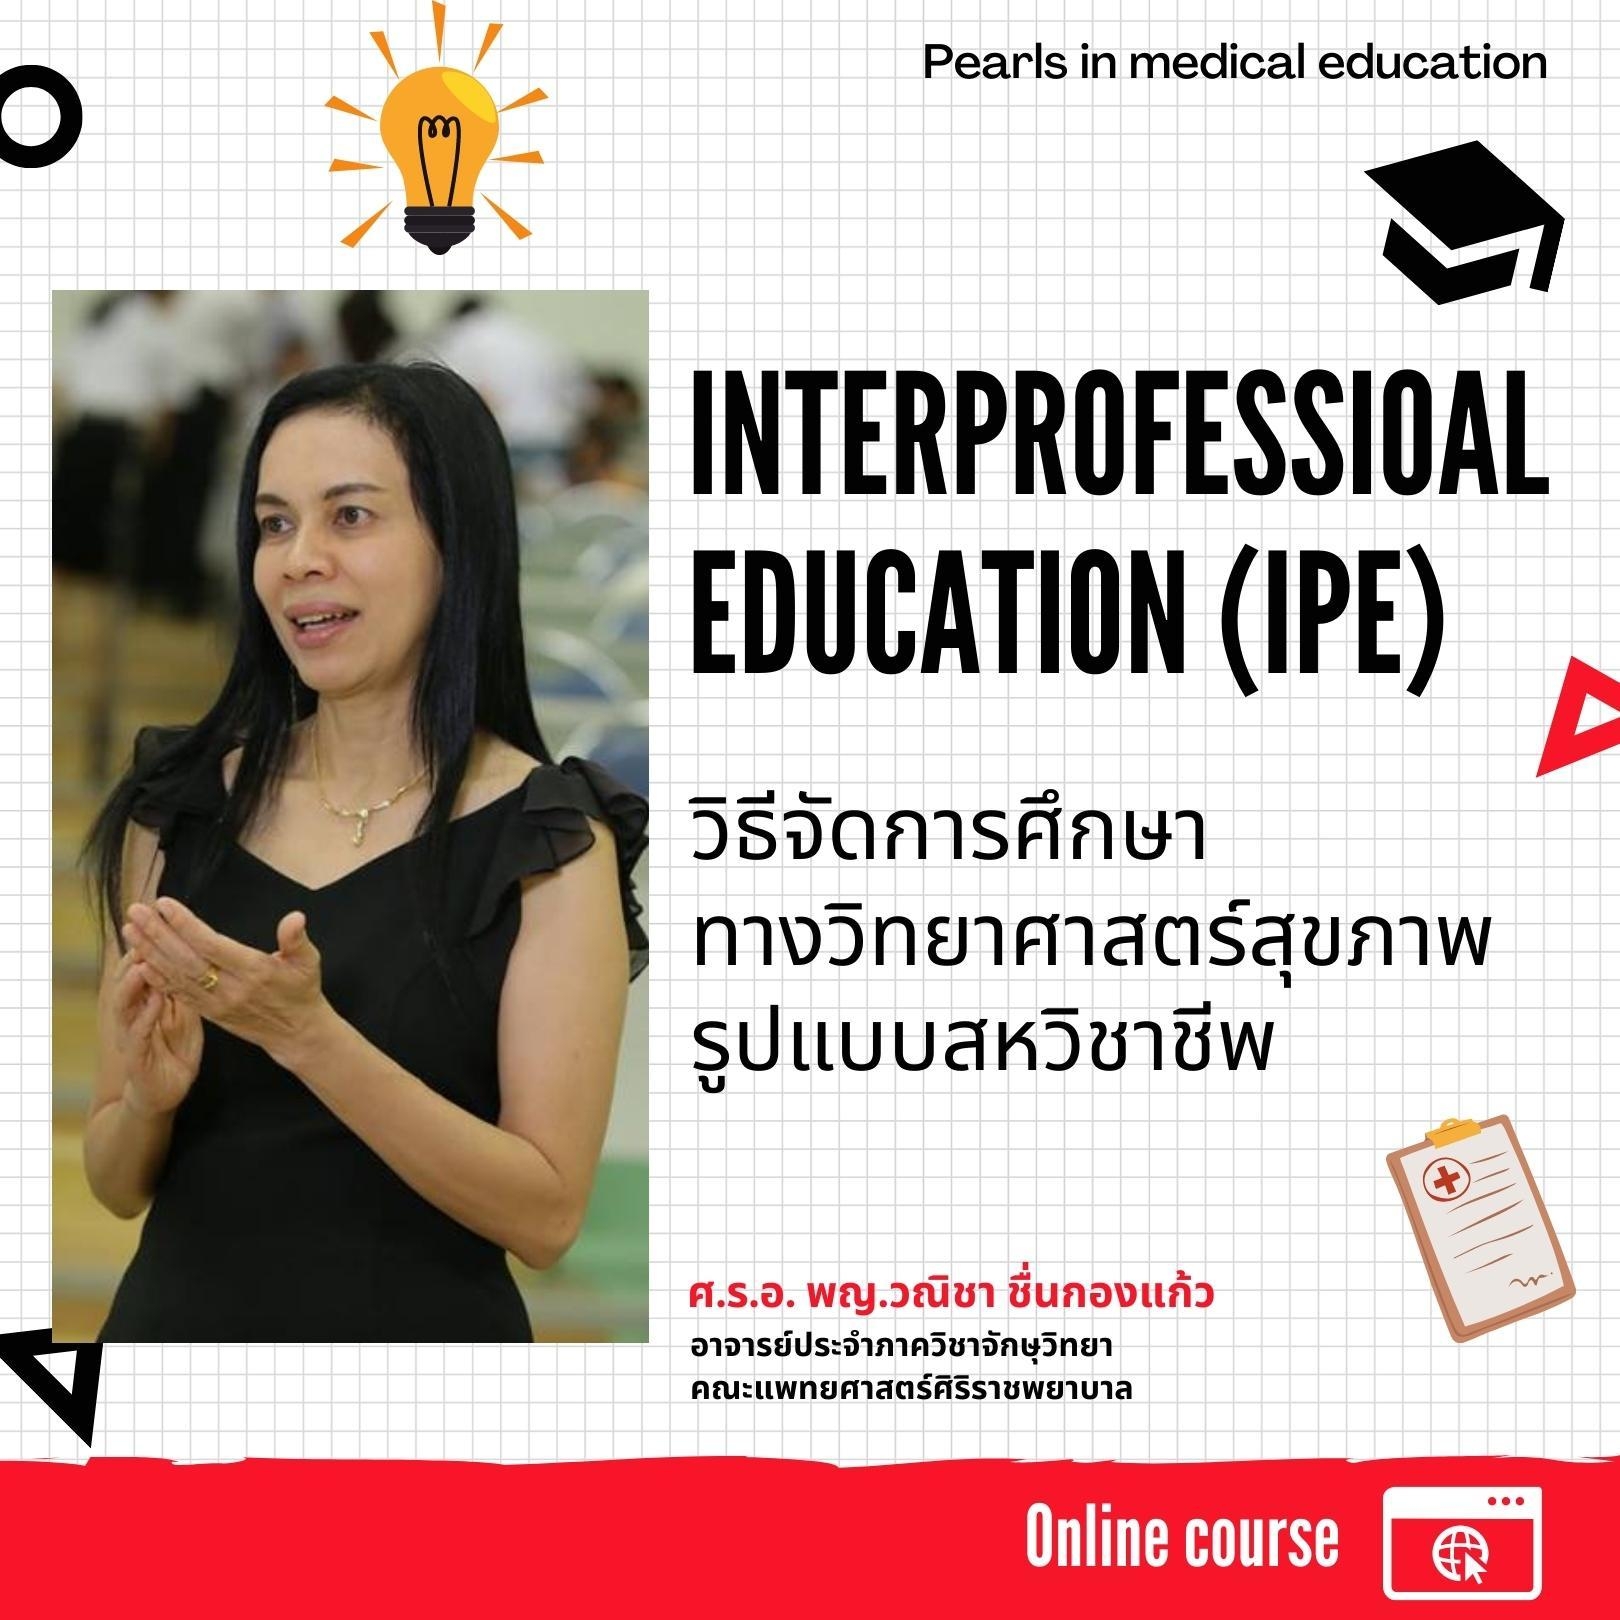  Interprofessional Education (IPE) วิธีจัดการศึกษาทางวิทยาศาสตร์สุขภาพรูปแบบสหวิชาชีพ